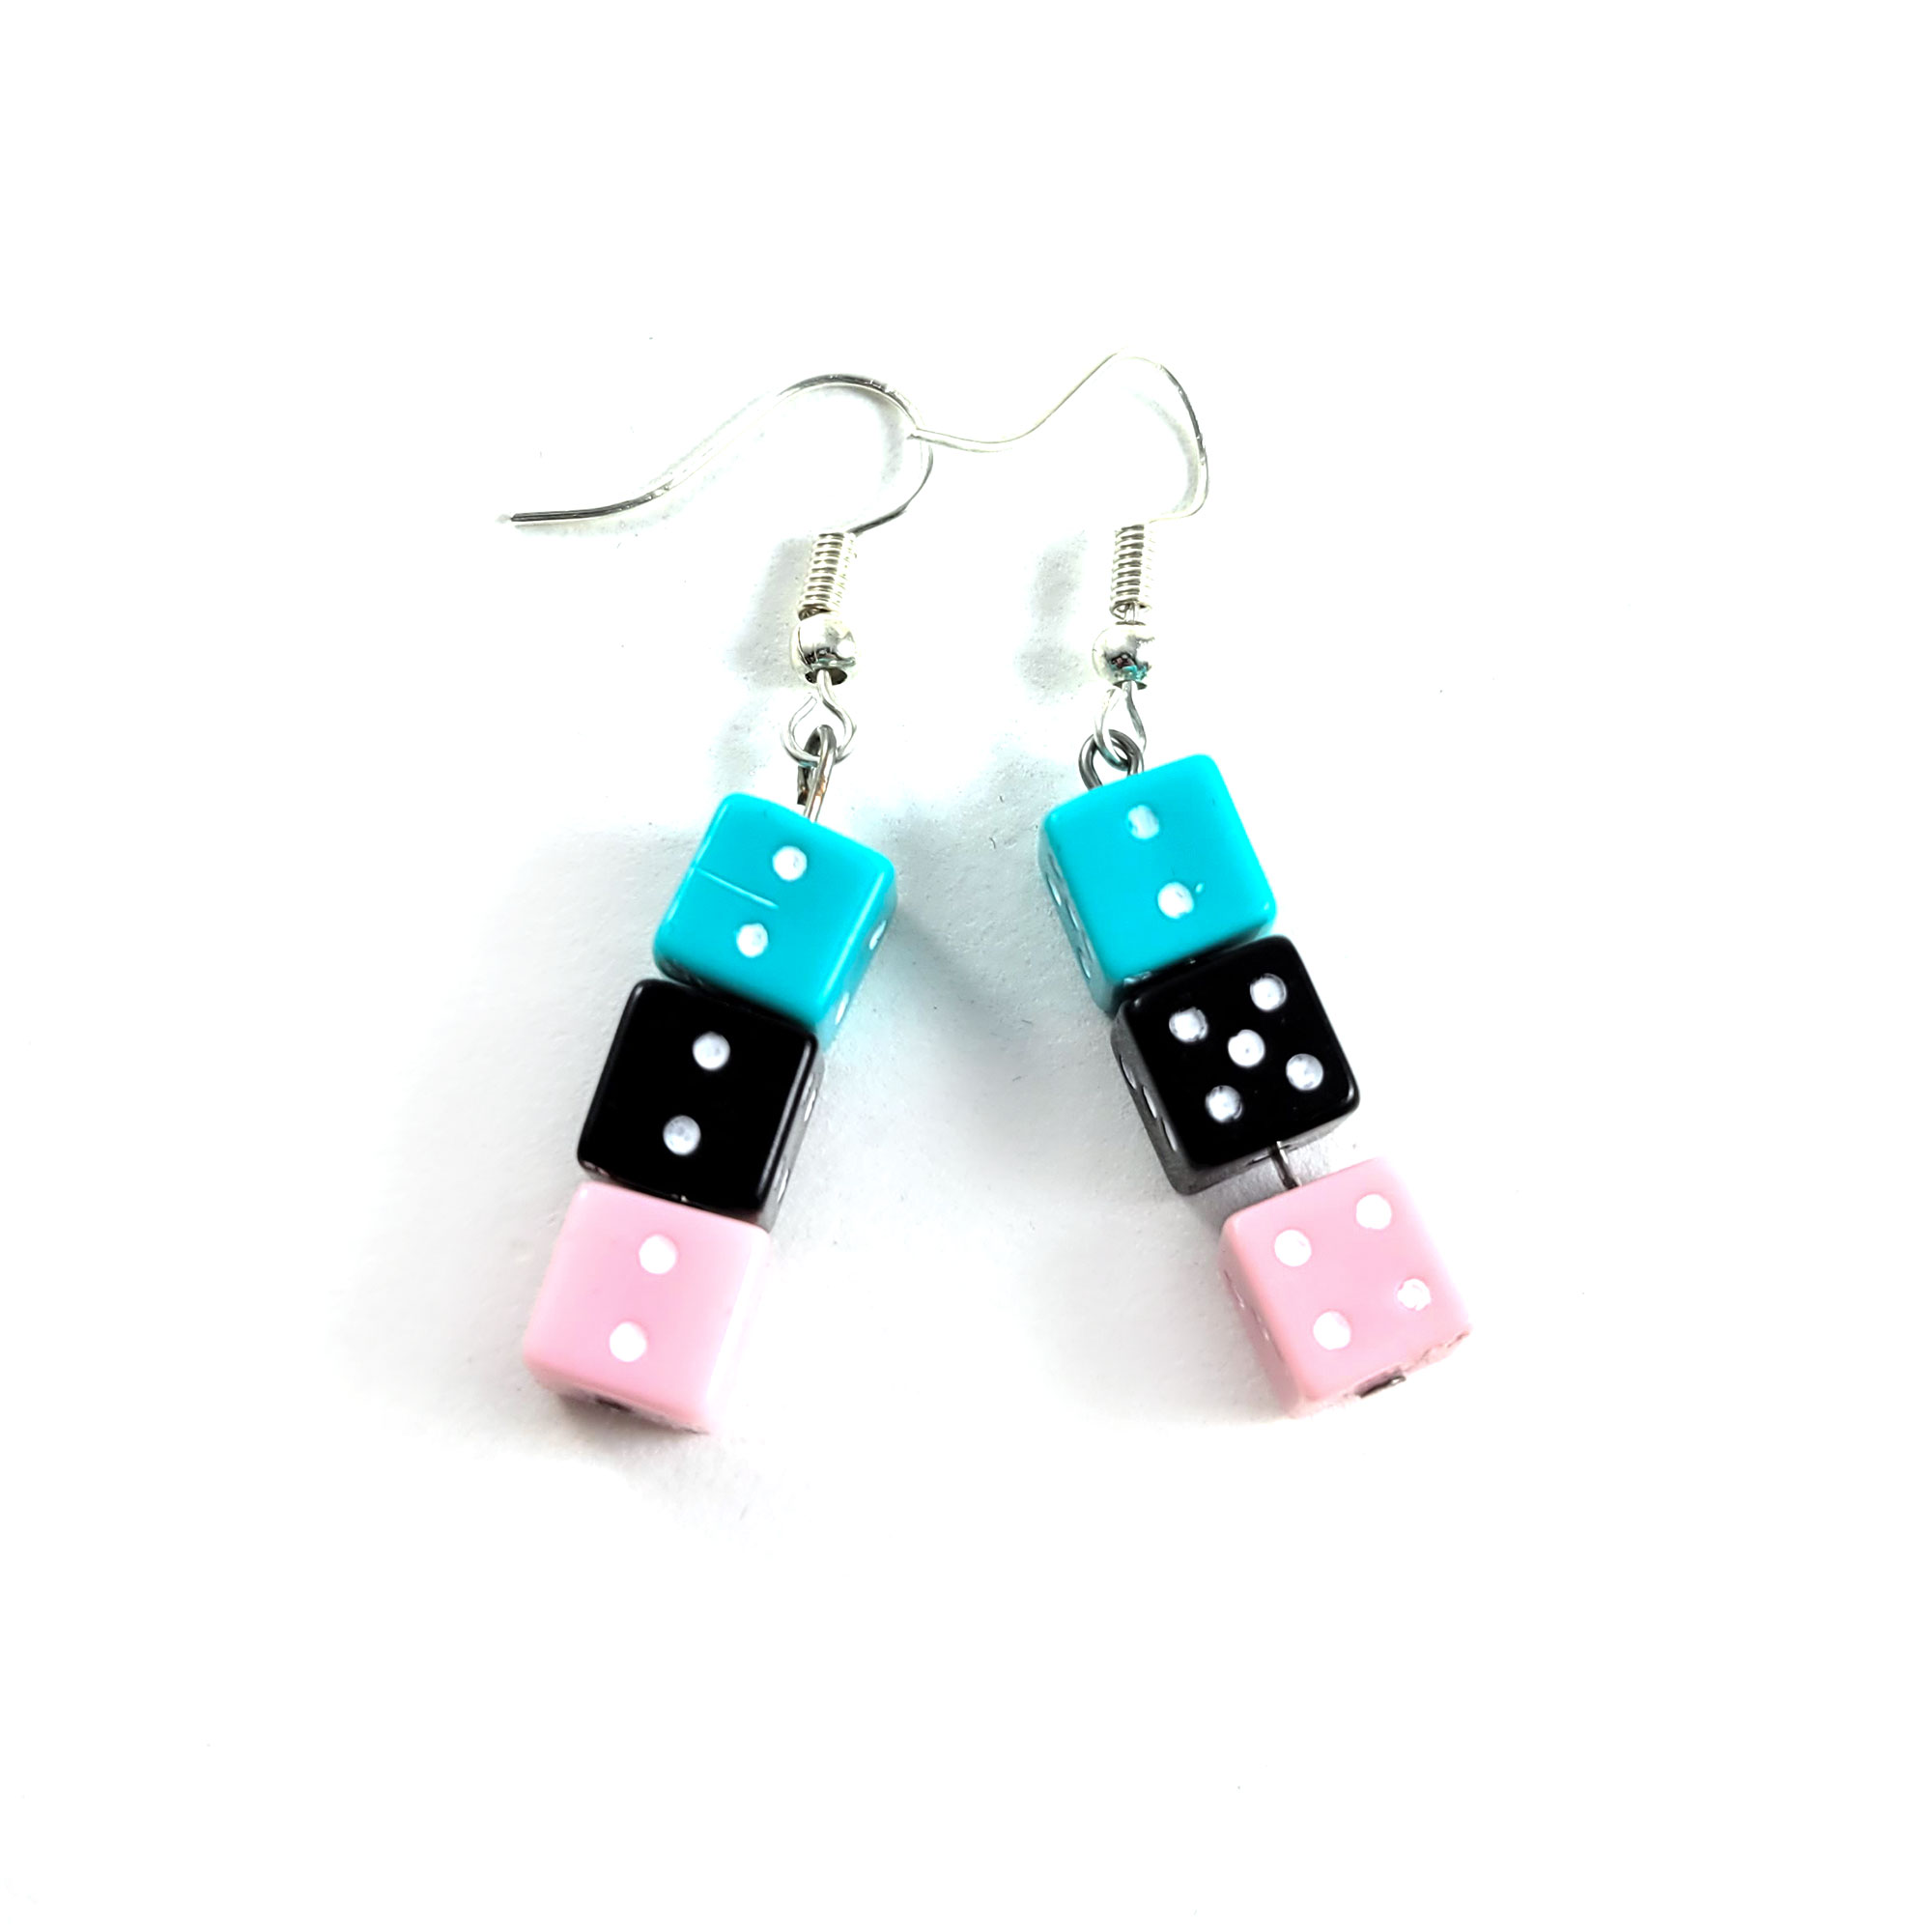 Teal, Black & Pink Gamer Gear Earrings by Wilde Designs